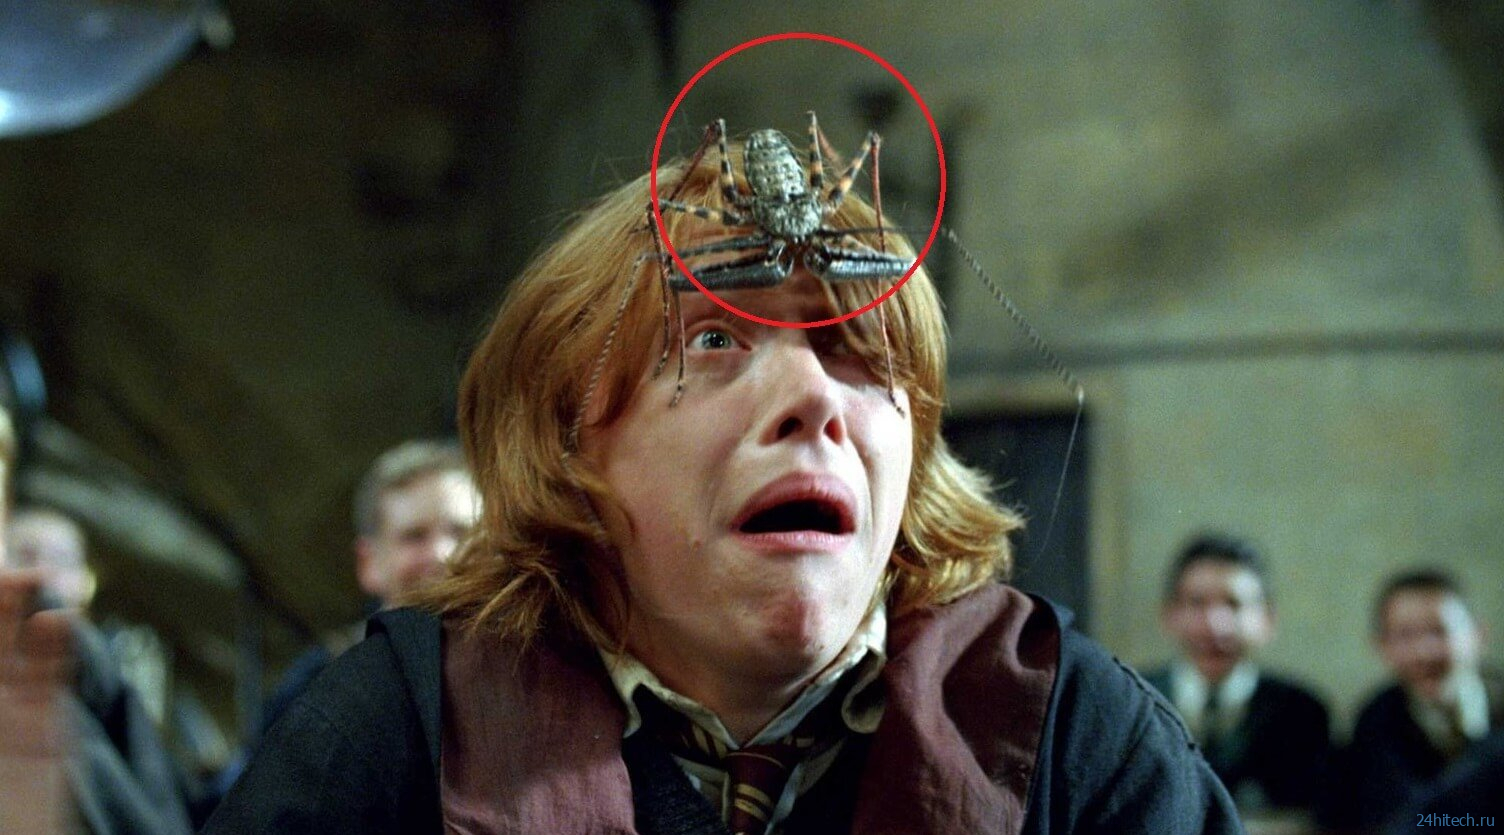 Фрины — ужасные существа из «Гарри Поттера», которые существуют в реальности